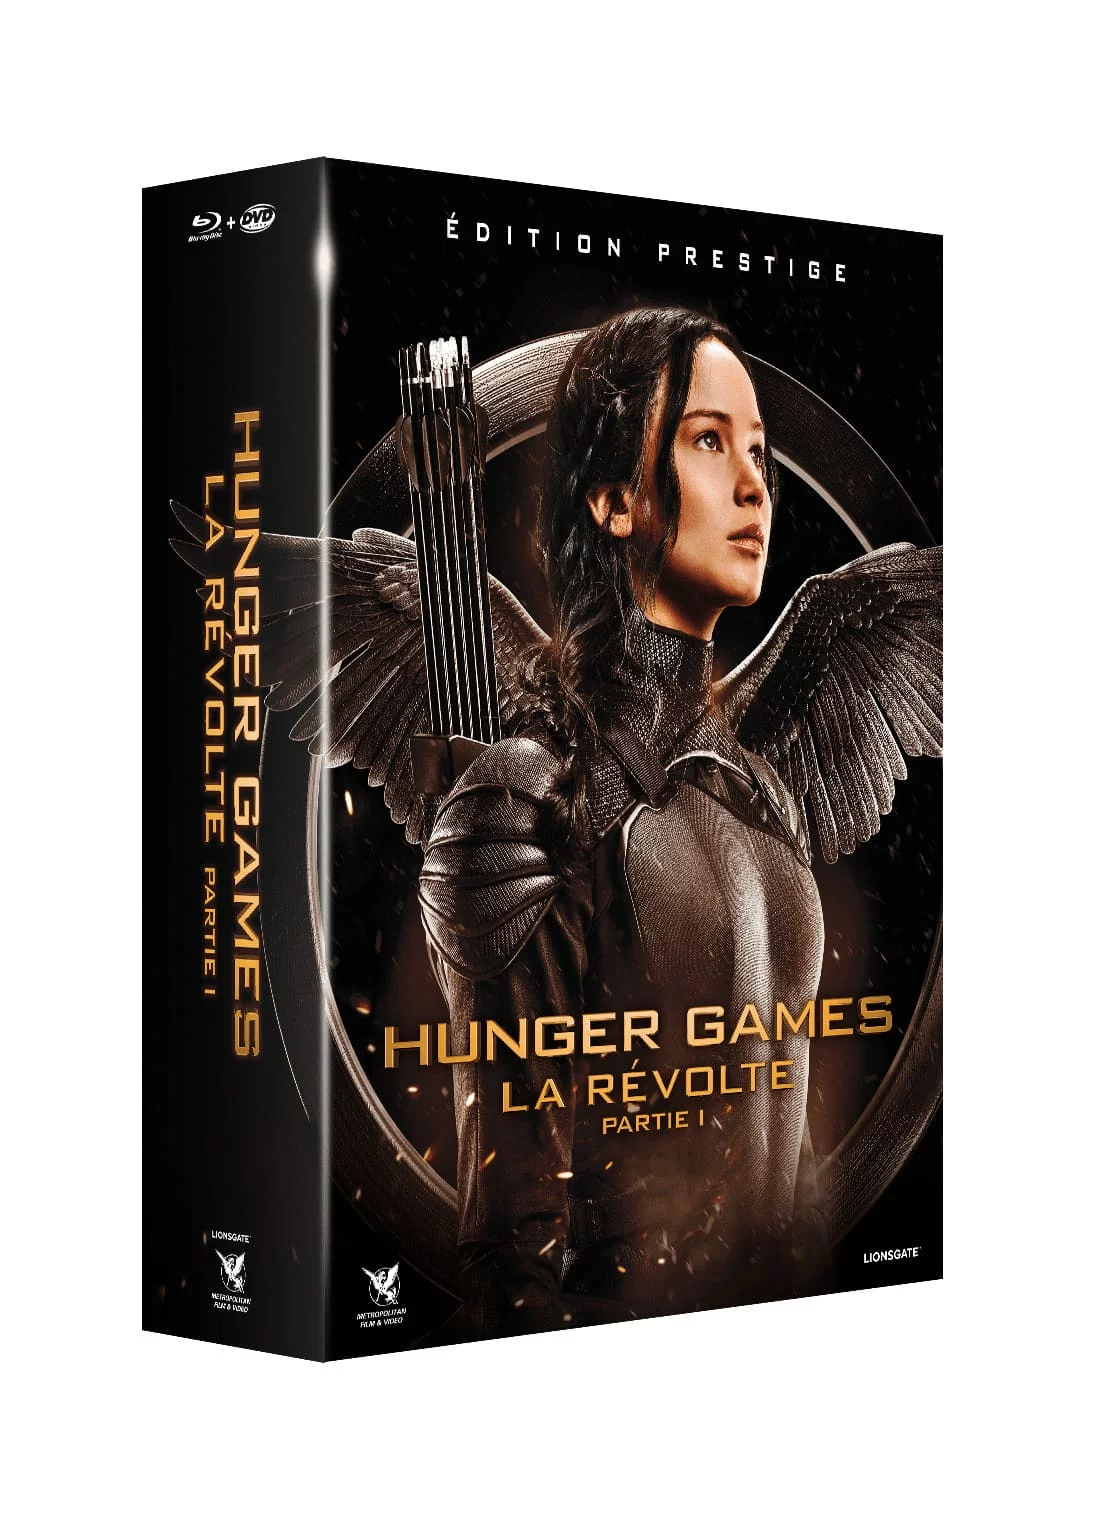 Miss Bobby_Hunger Games-La révolte-Partie 1-édition prestige